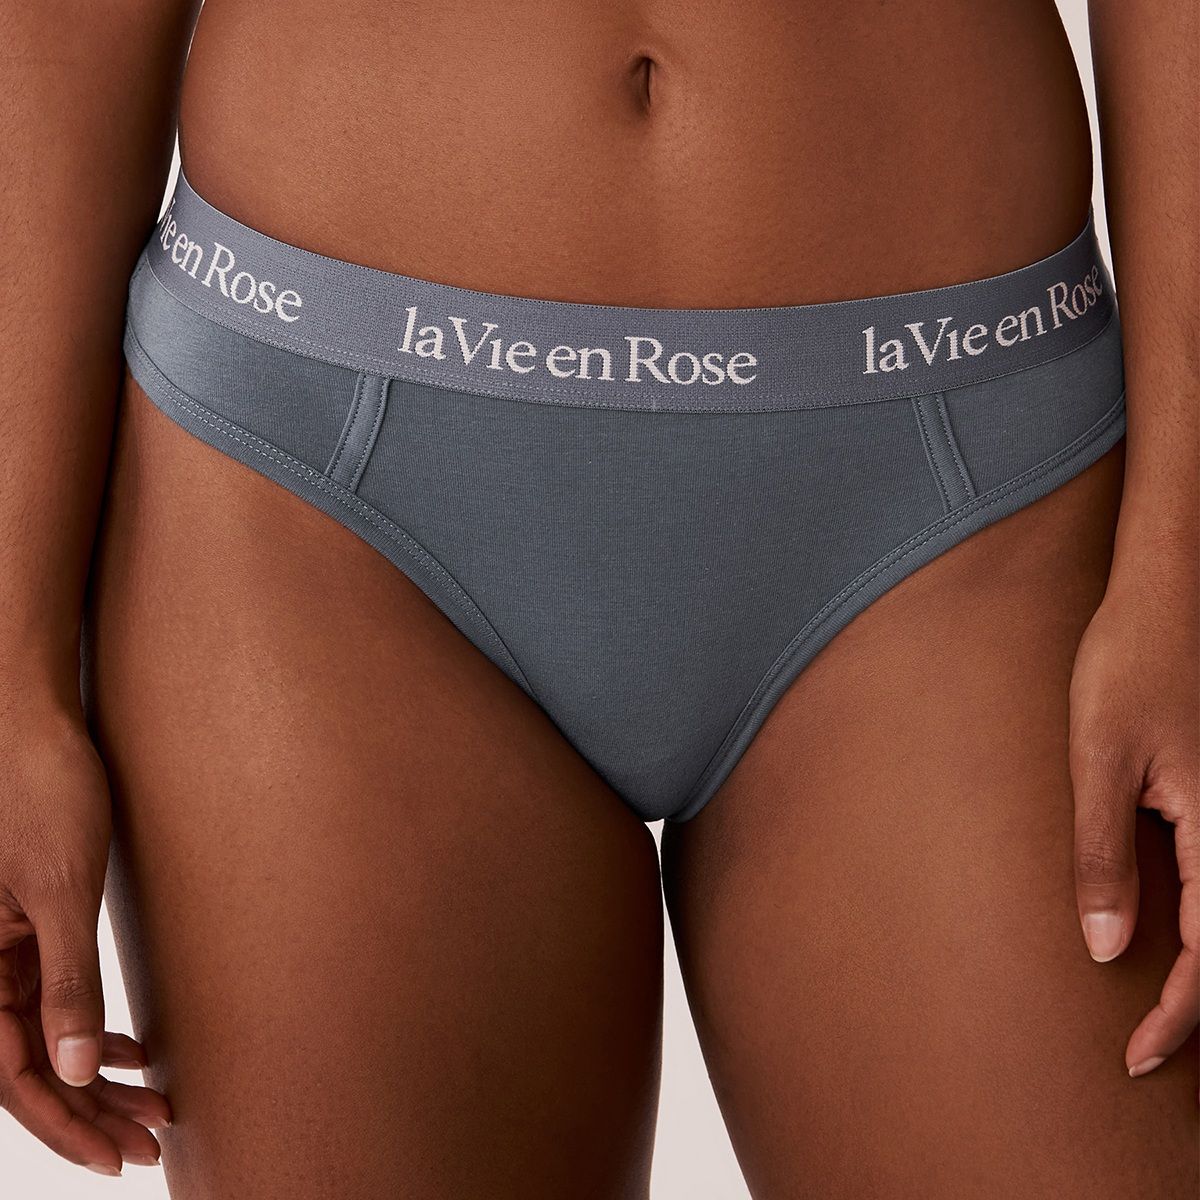 Buy La Vie En Rose Elastic Band Cheeky Panty Online